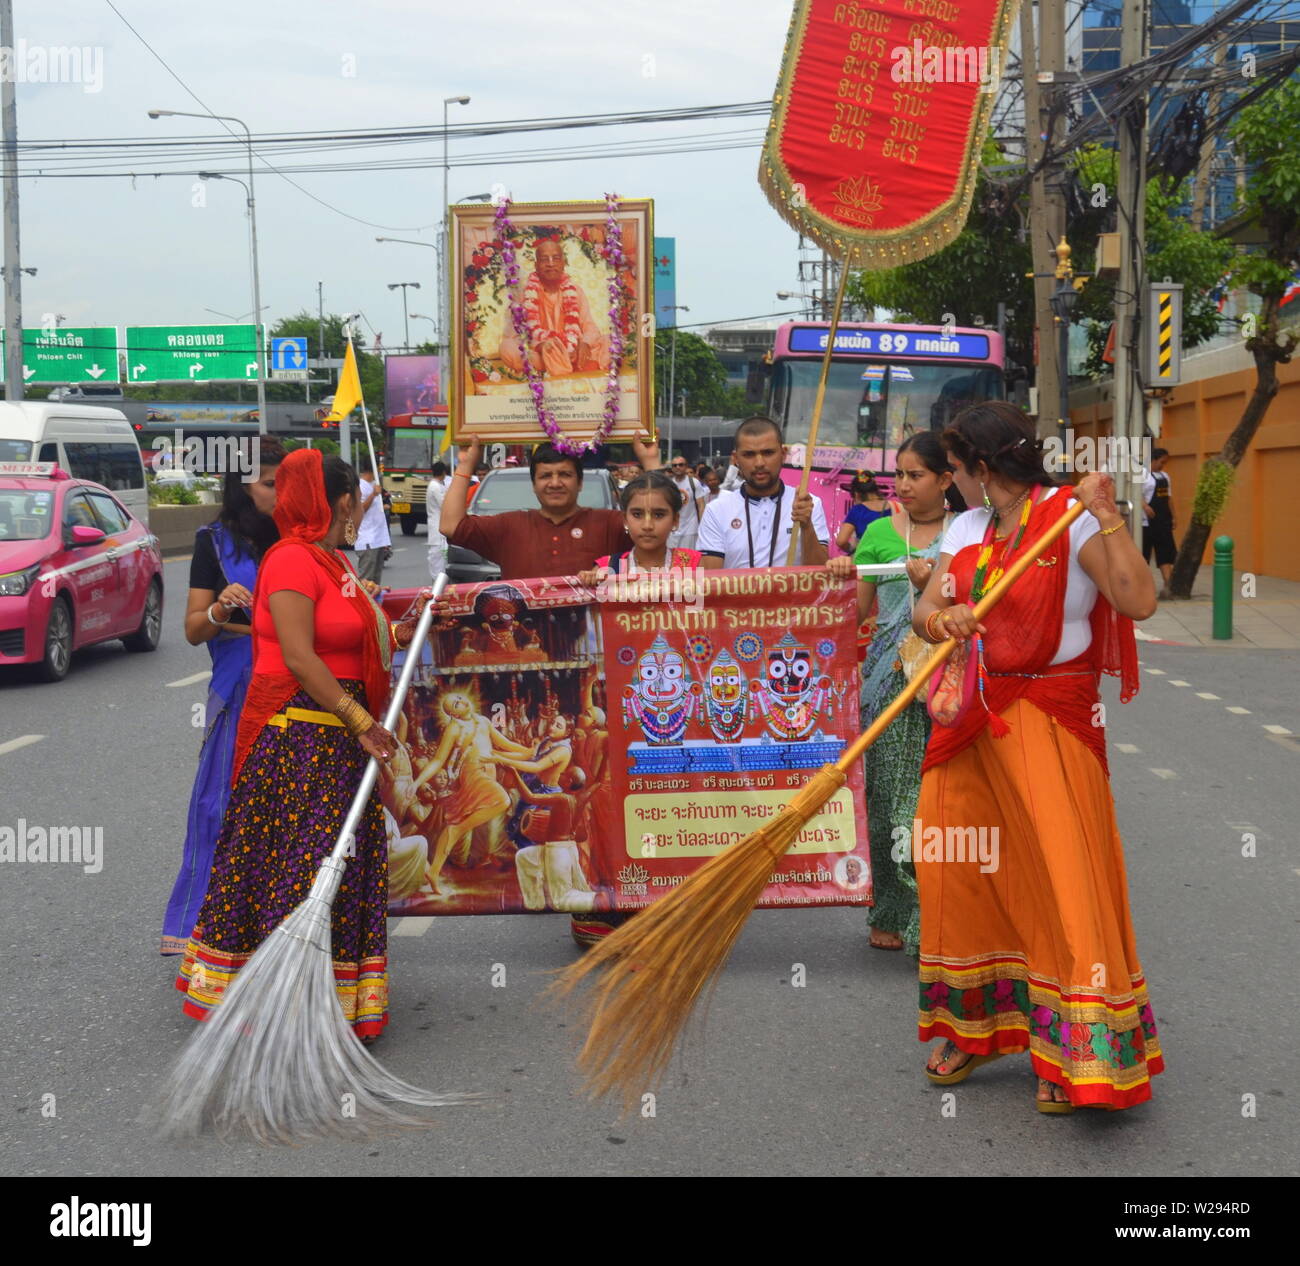 Las mujeres barrer las calles en la parte delantera de un colorido desfile por la Sociedad Internacional para la Conciencia de Krishna (ISKCON) en Bangkok, Tailandia, el 7 de julio de 2019. El desfile comenzó en la Cámara de Comercio de Indias en Sathorn Soi 1 y siguió por la calle Sathorn Road. El movimiento Hare Krishna o hare krishnas, es una organización religiosa hindú Vaishnava Gaudiya fundada en 1966 en la Ciudad de Nueva York por A. C. Bhaktivedanta Swami Prabhupada, el gurú y maestro espiritual de la organización. Foto de stock